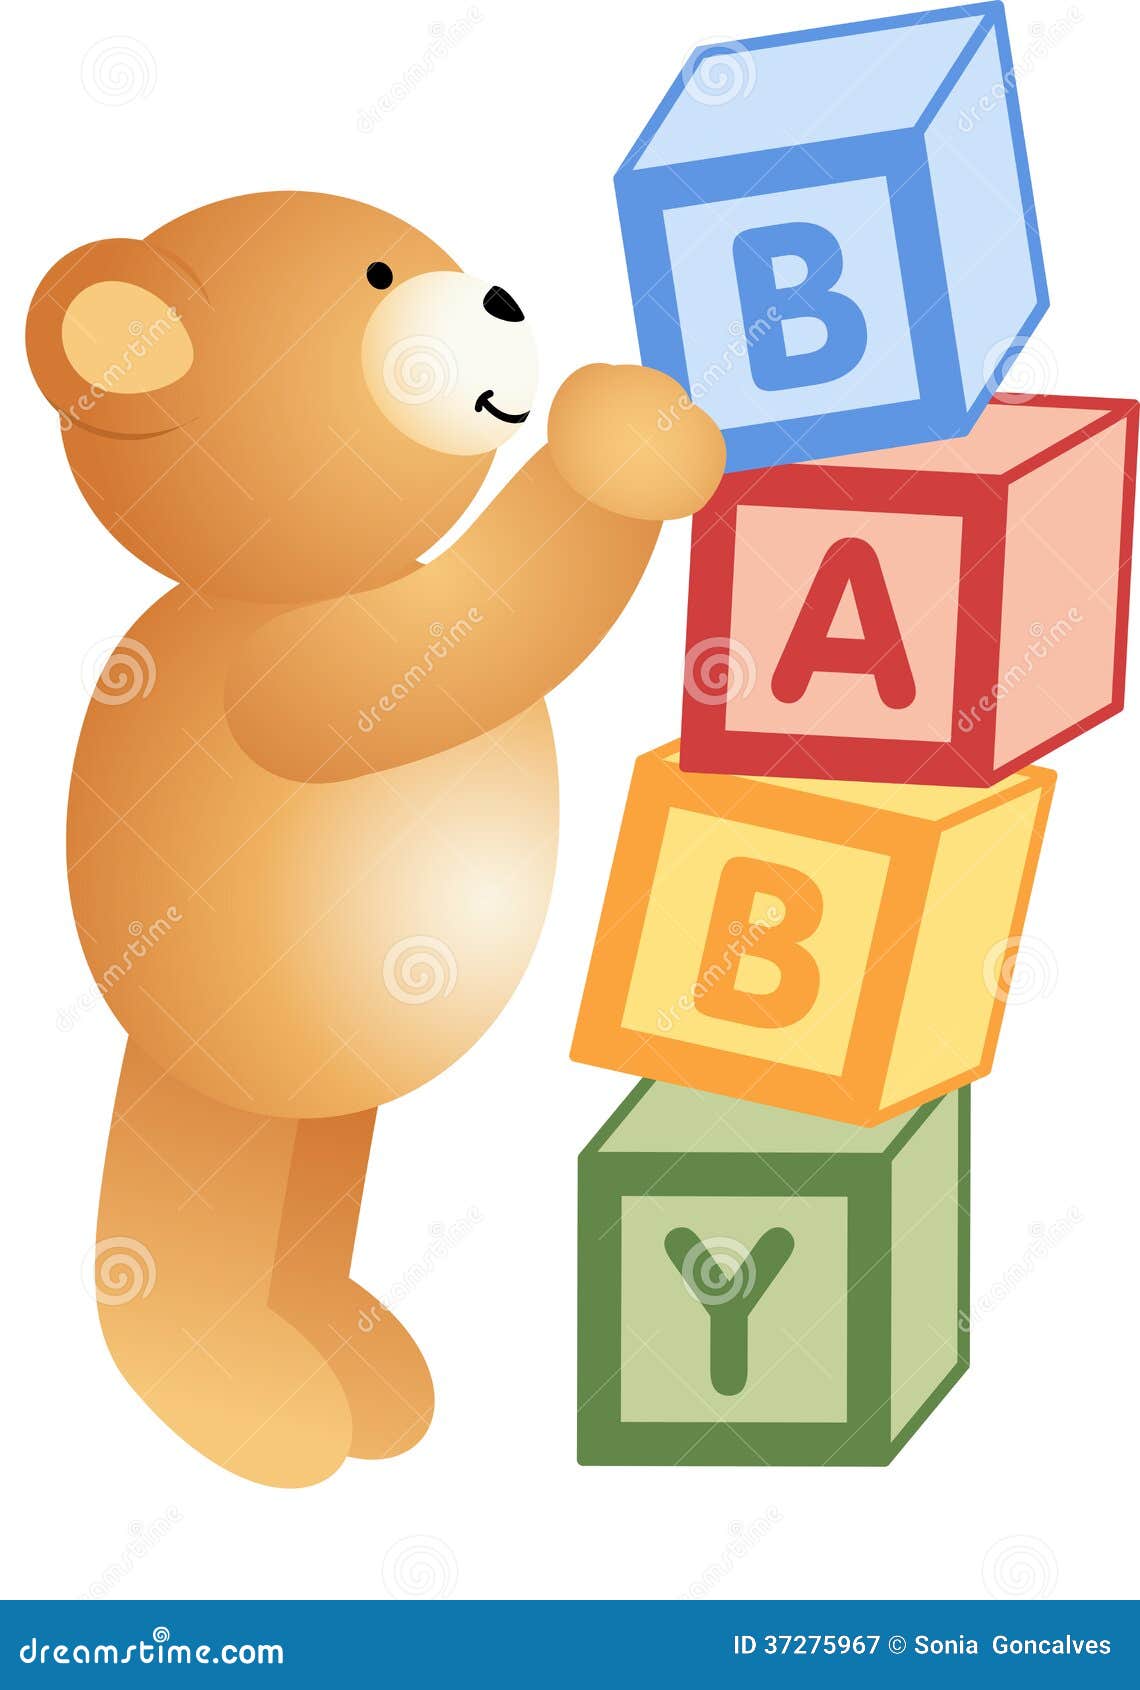 alphabet teddy bear clipart - photo #21